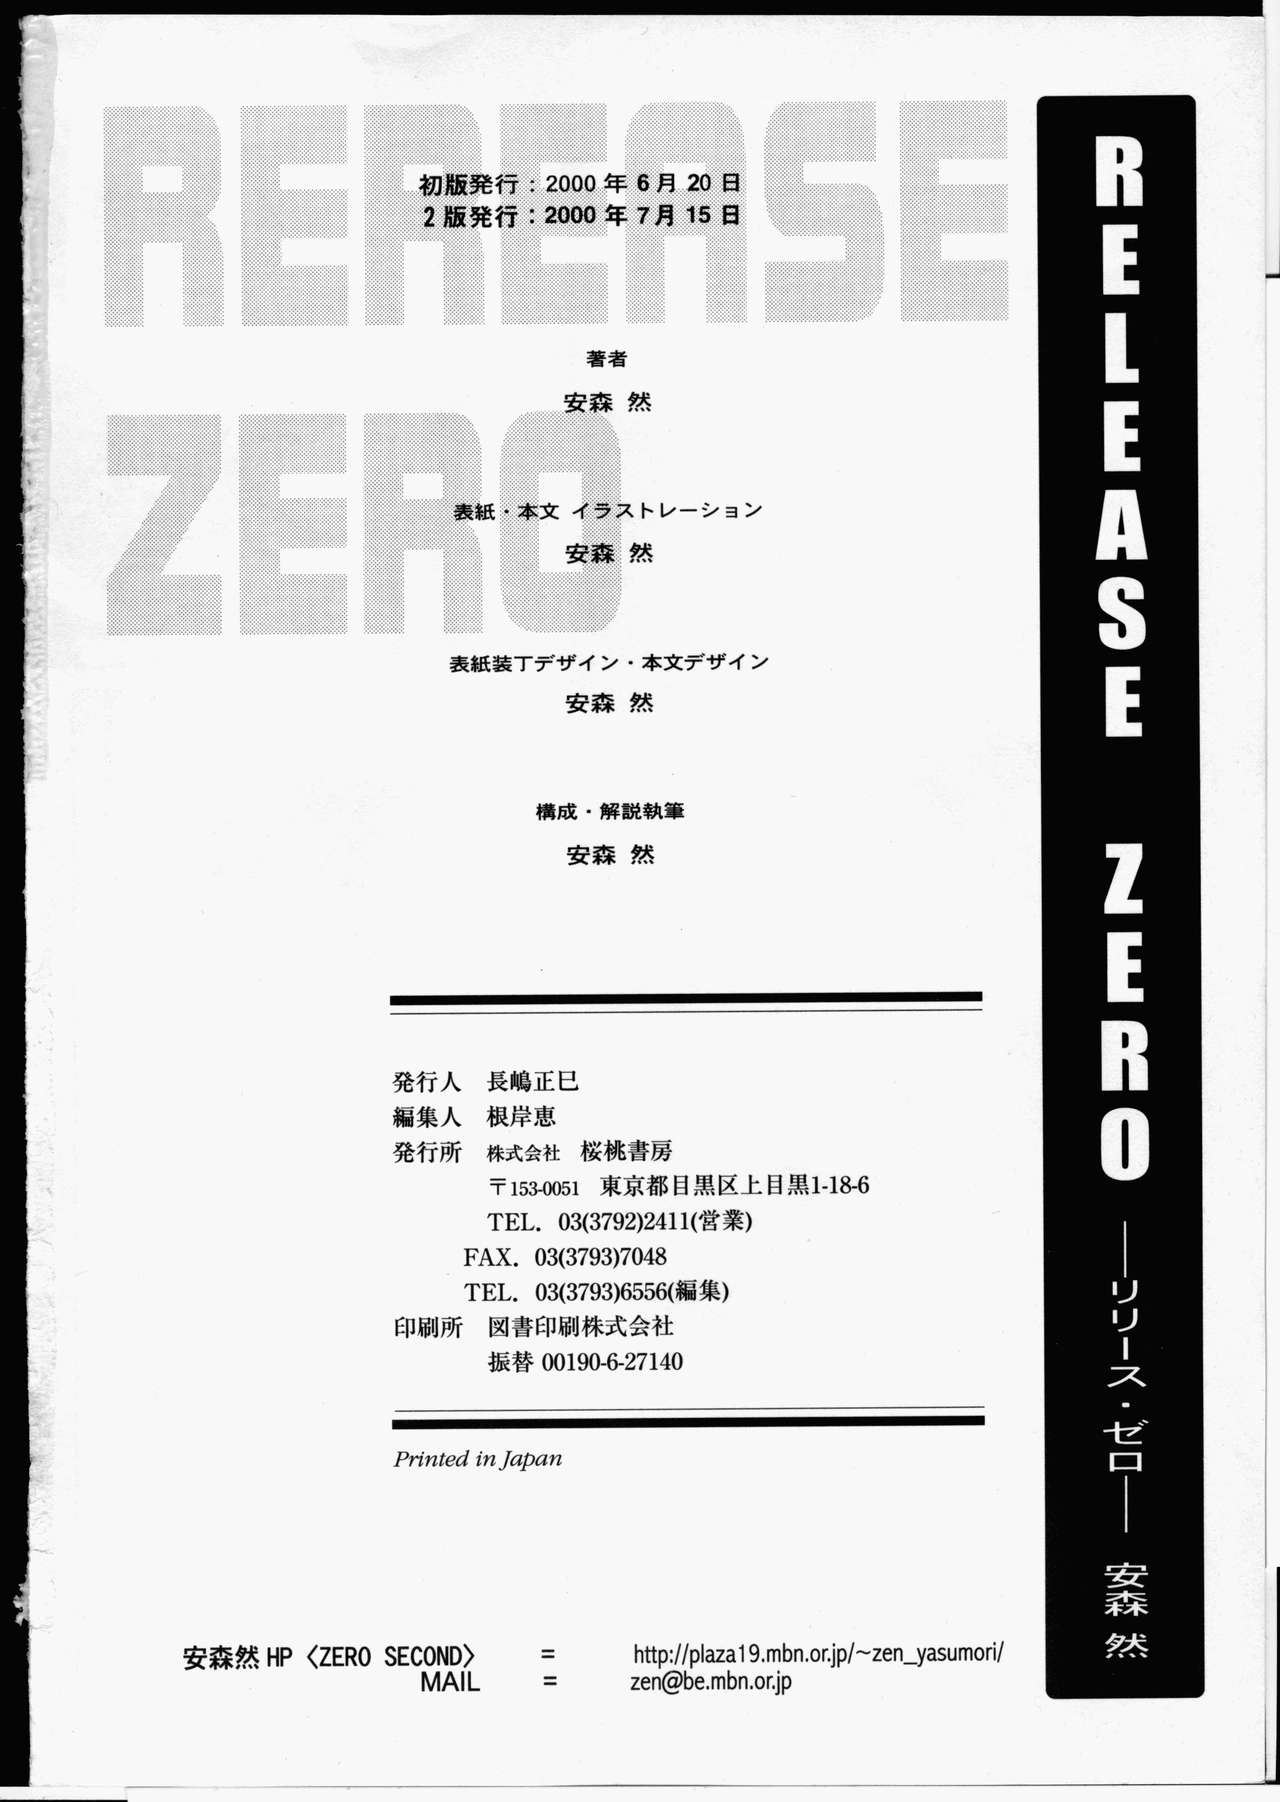 [安森然] Release Zero